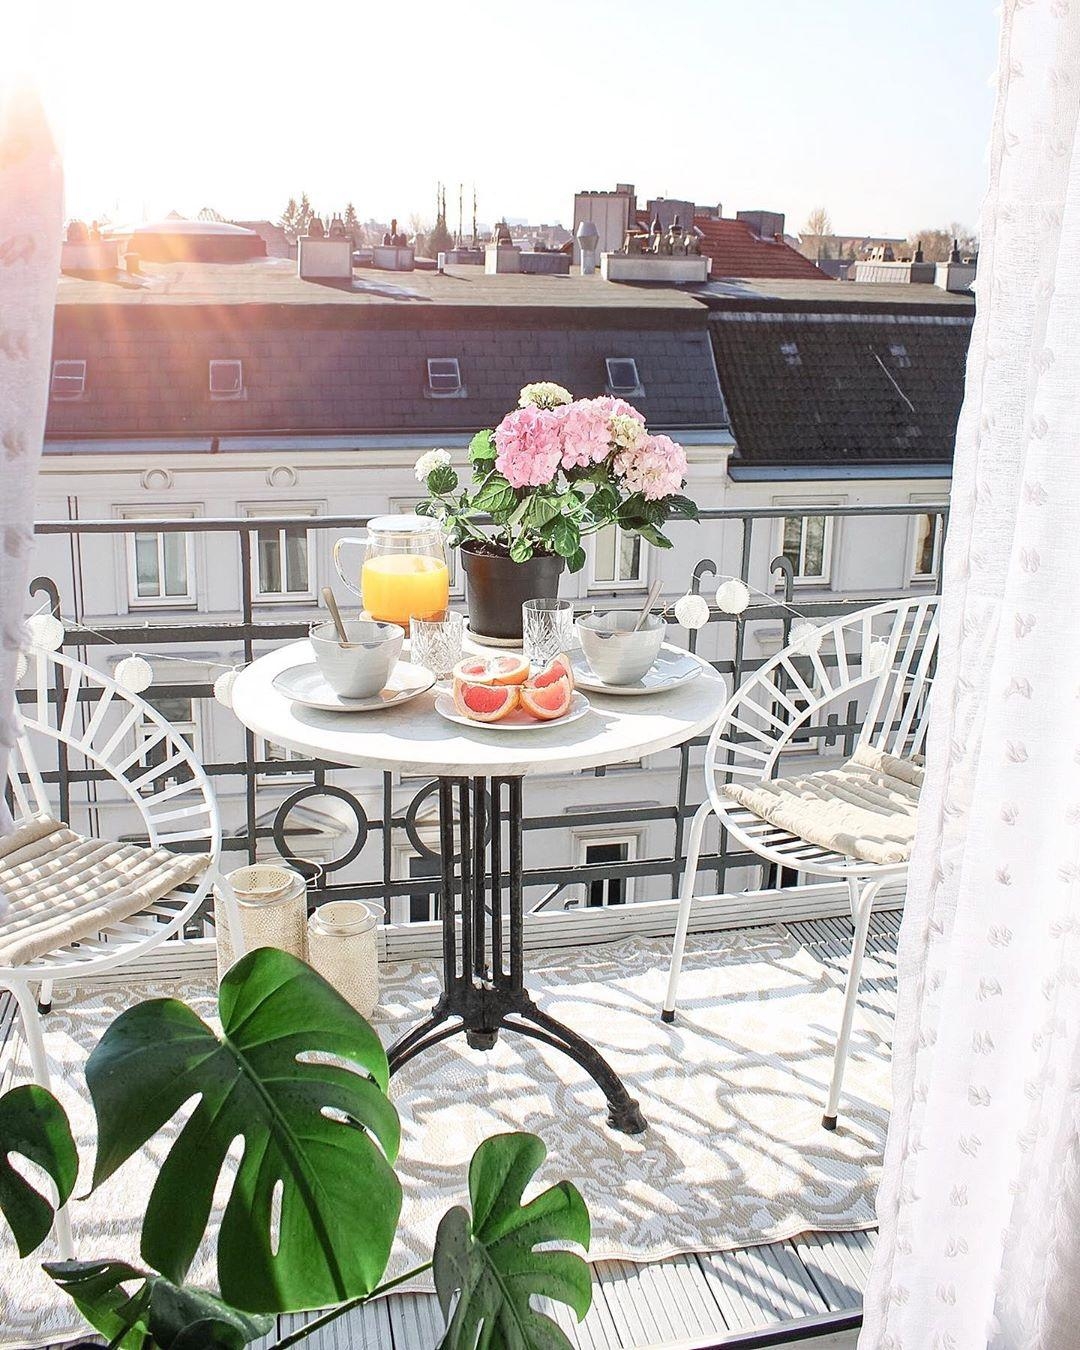 Frühstücken und die #Sonne genießen.🌞

#sitzecke #livingchallenge #balkon #stühle #blumen #altbau #deko #tisch #cozy